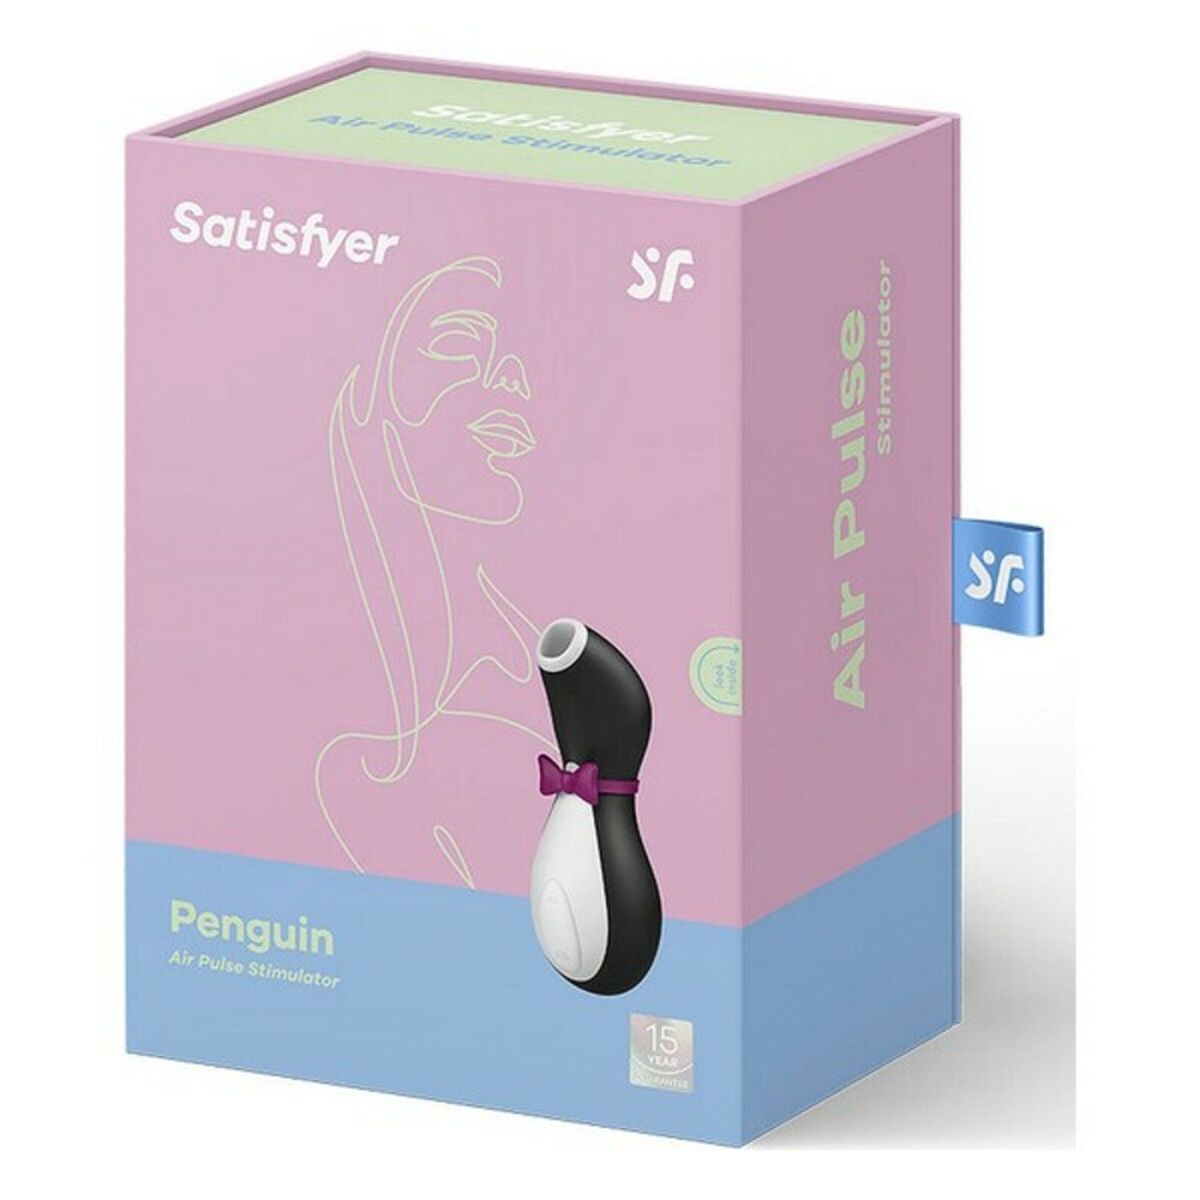 Zuigapparaat voor de clitoris Satisfyer Pro Penguin